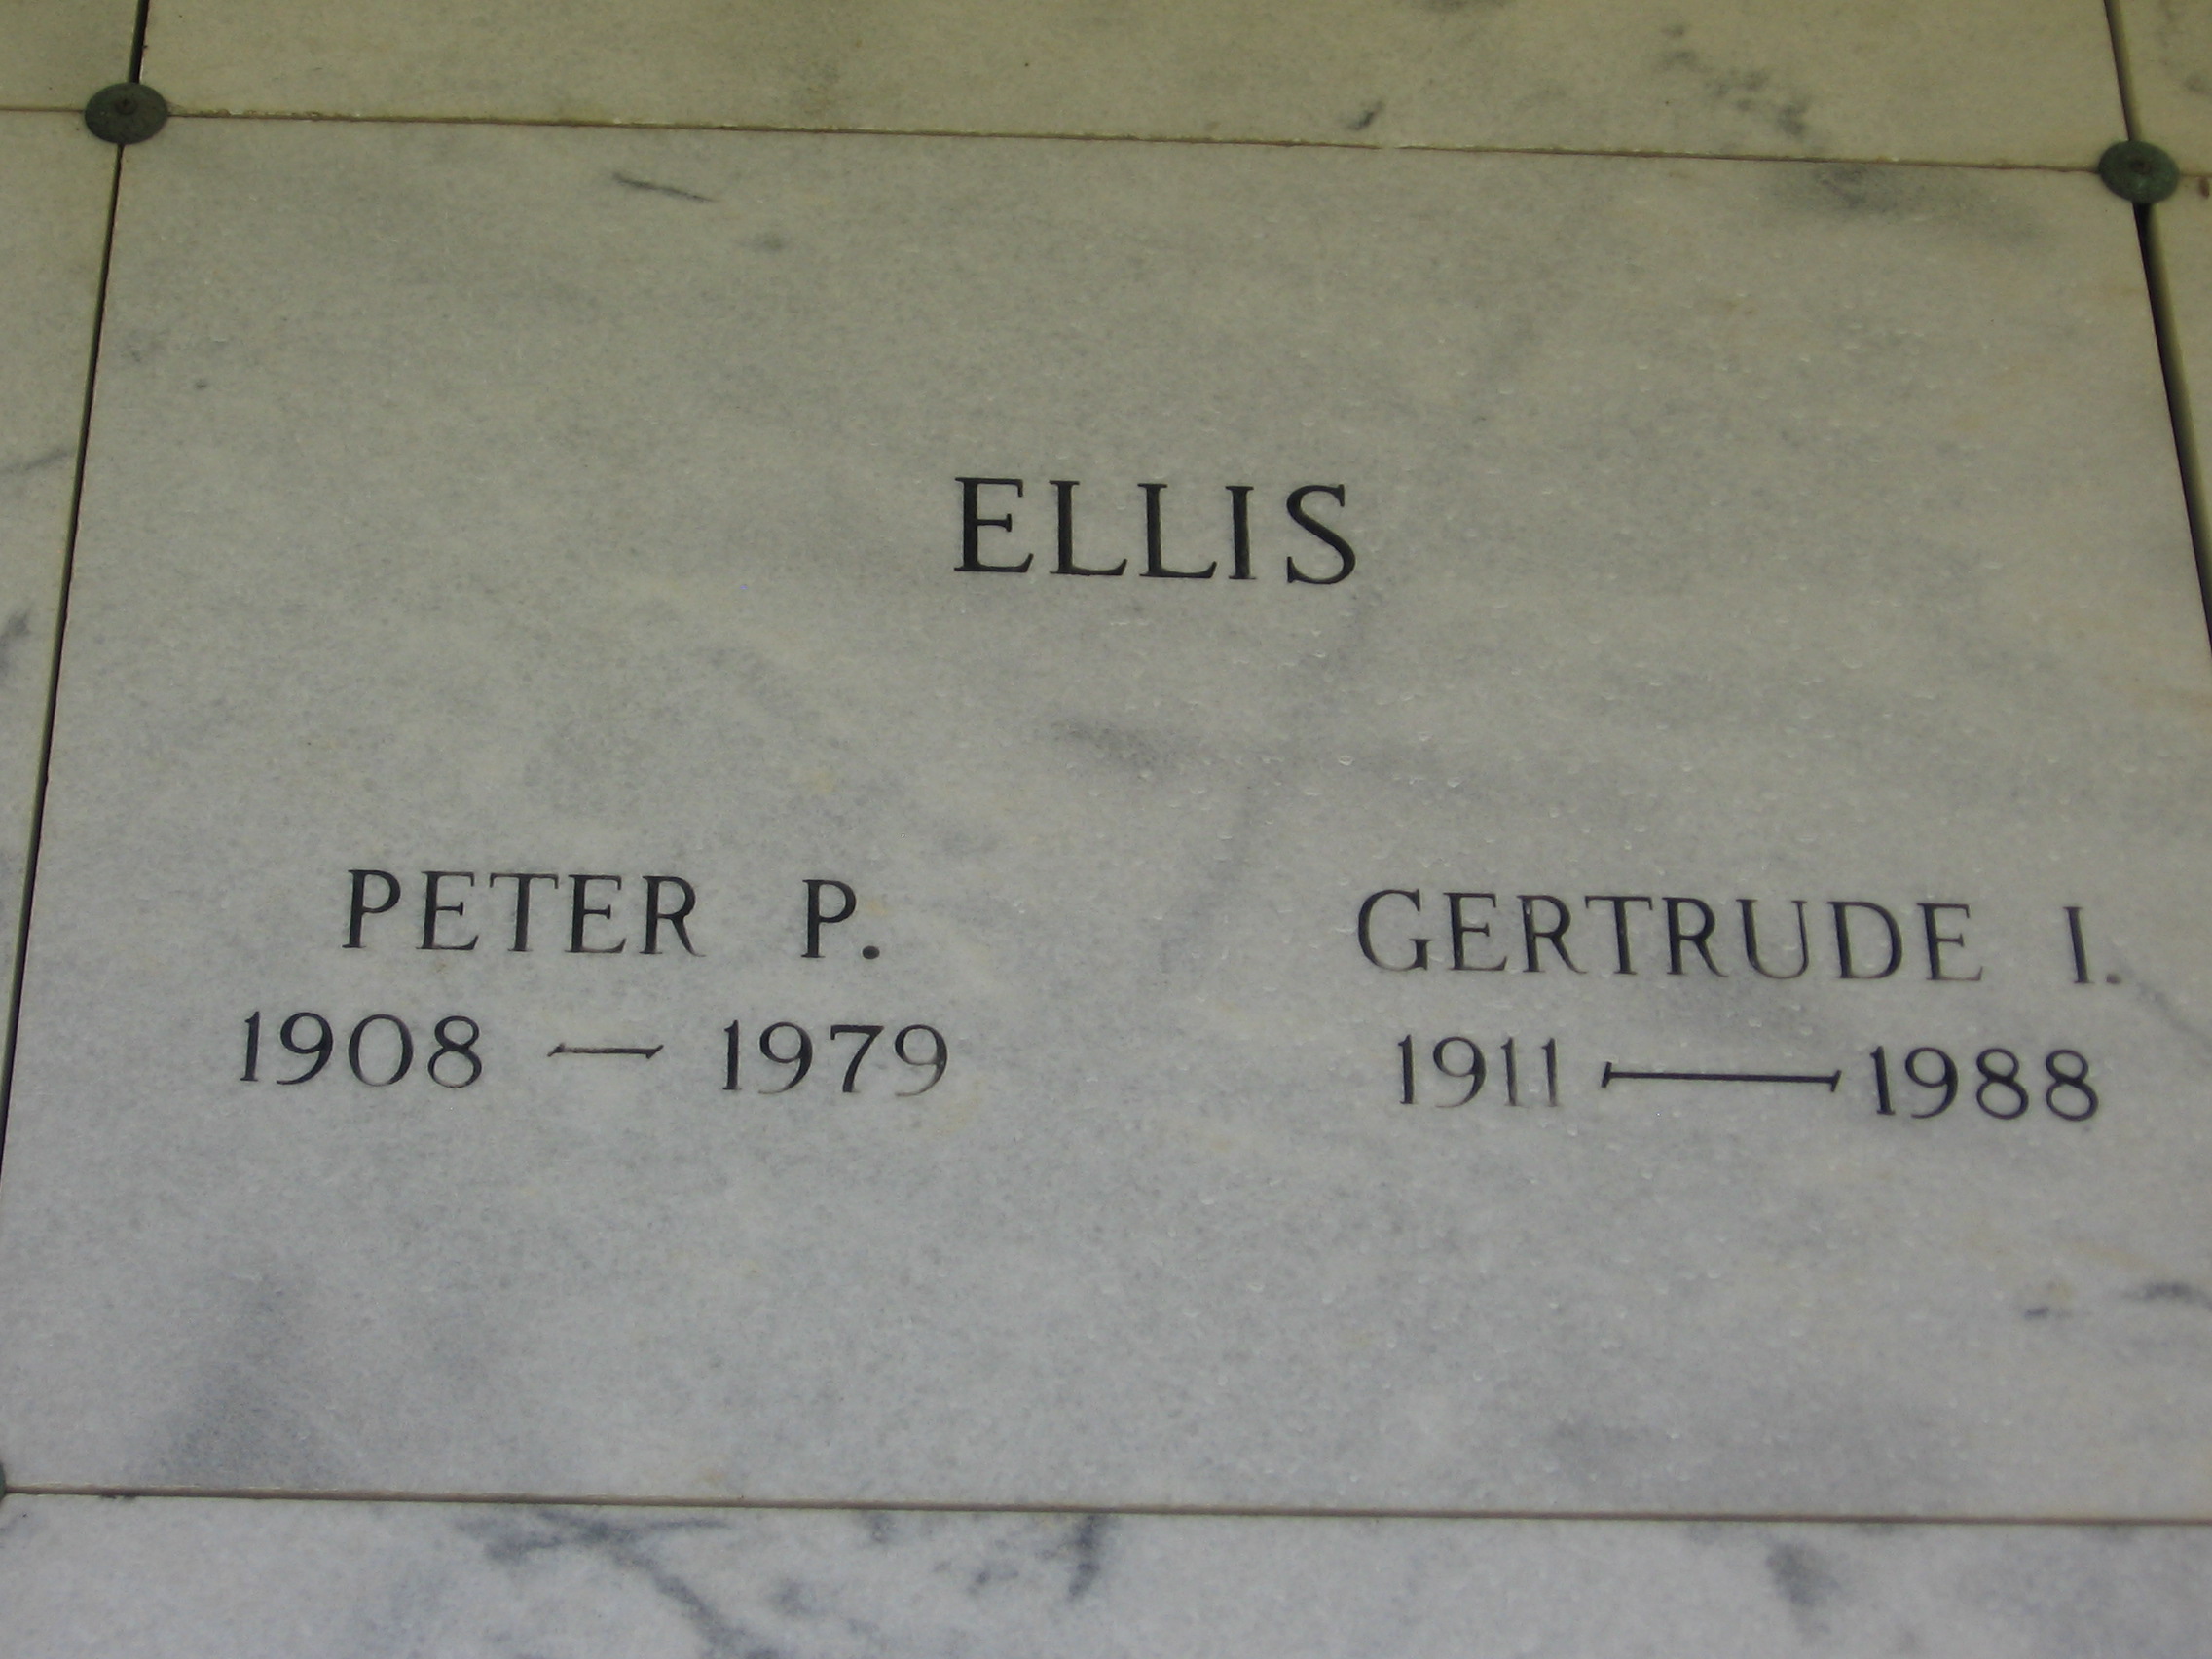 Gertrude I Ellis